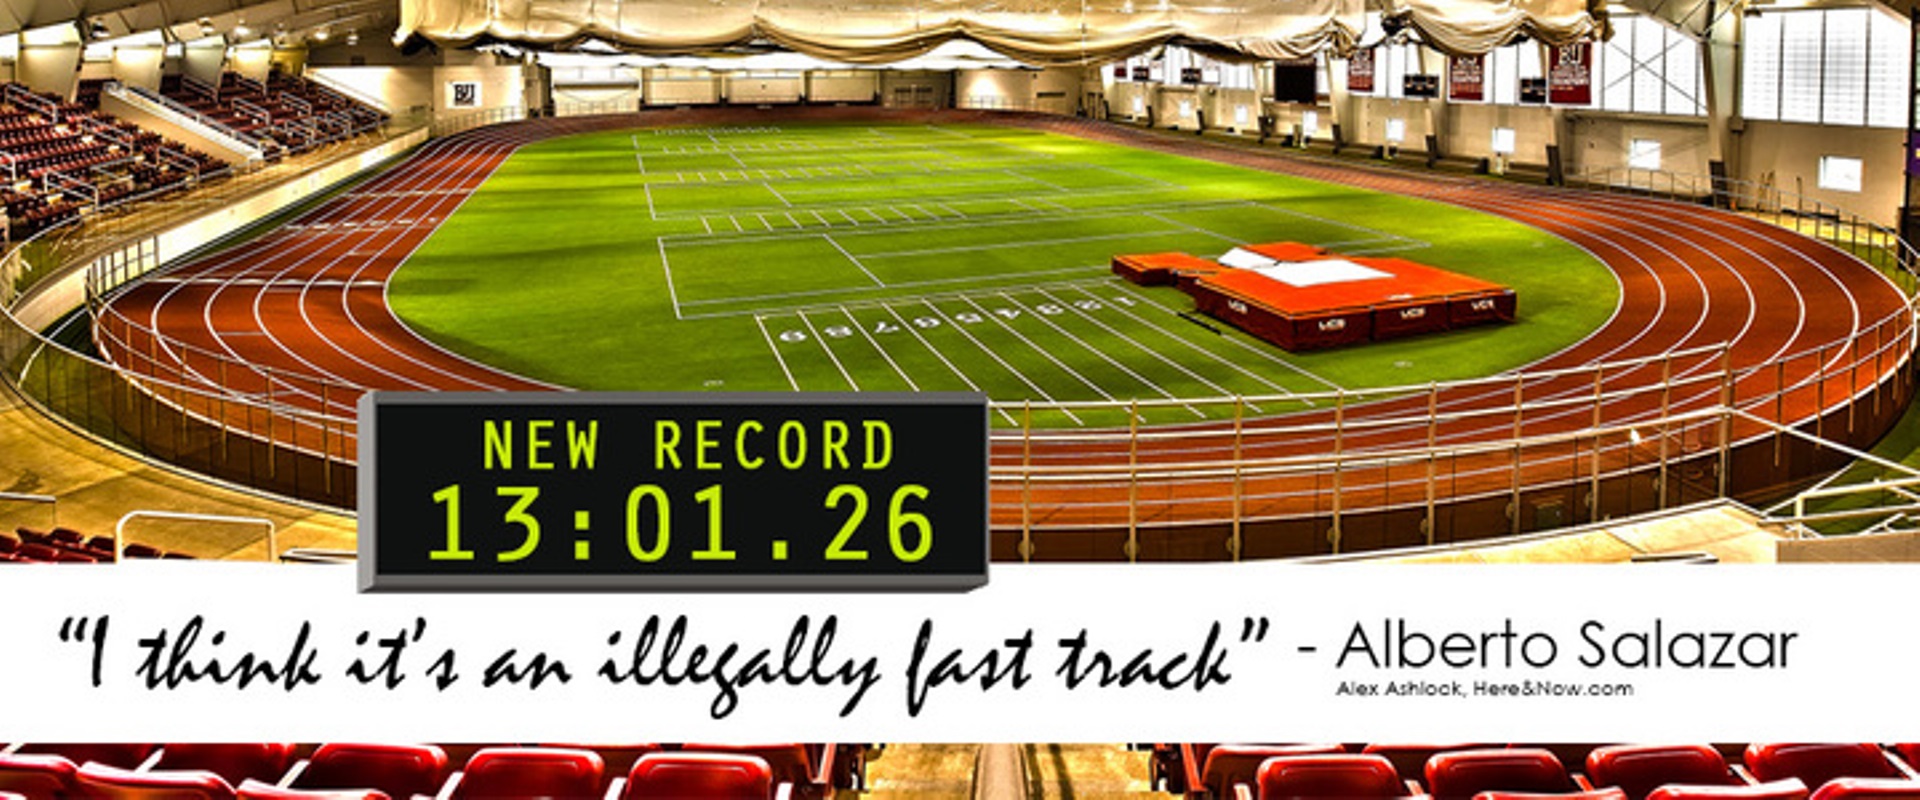 U.S. & Canadian Records Set on Beynon Sports' Indoor Track - Beynon